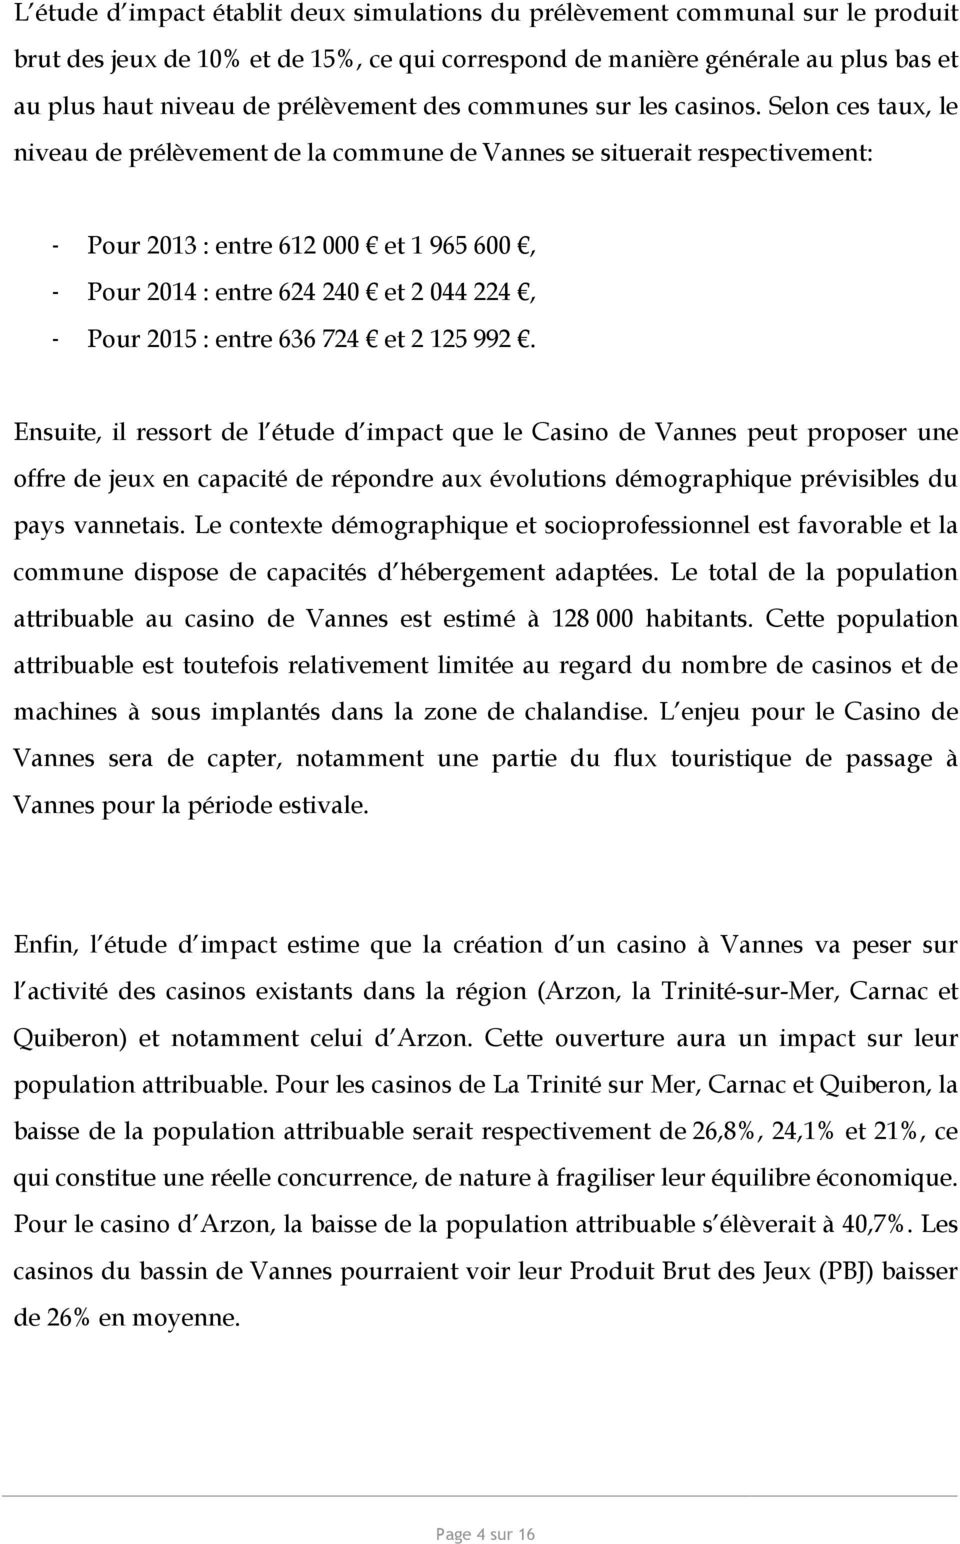 Selon ces taux, le niveau de prélèvement de la commune de Vannes se situerait respectivement: - Pour 2013 : entre 612 000 et 1 965 600, - Pour 2014 : entre 624 240 et 2 044 224, - Pour 2015 : entre